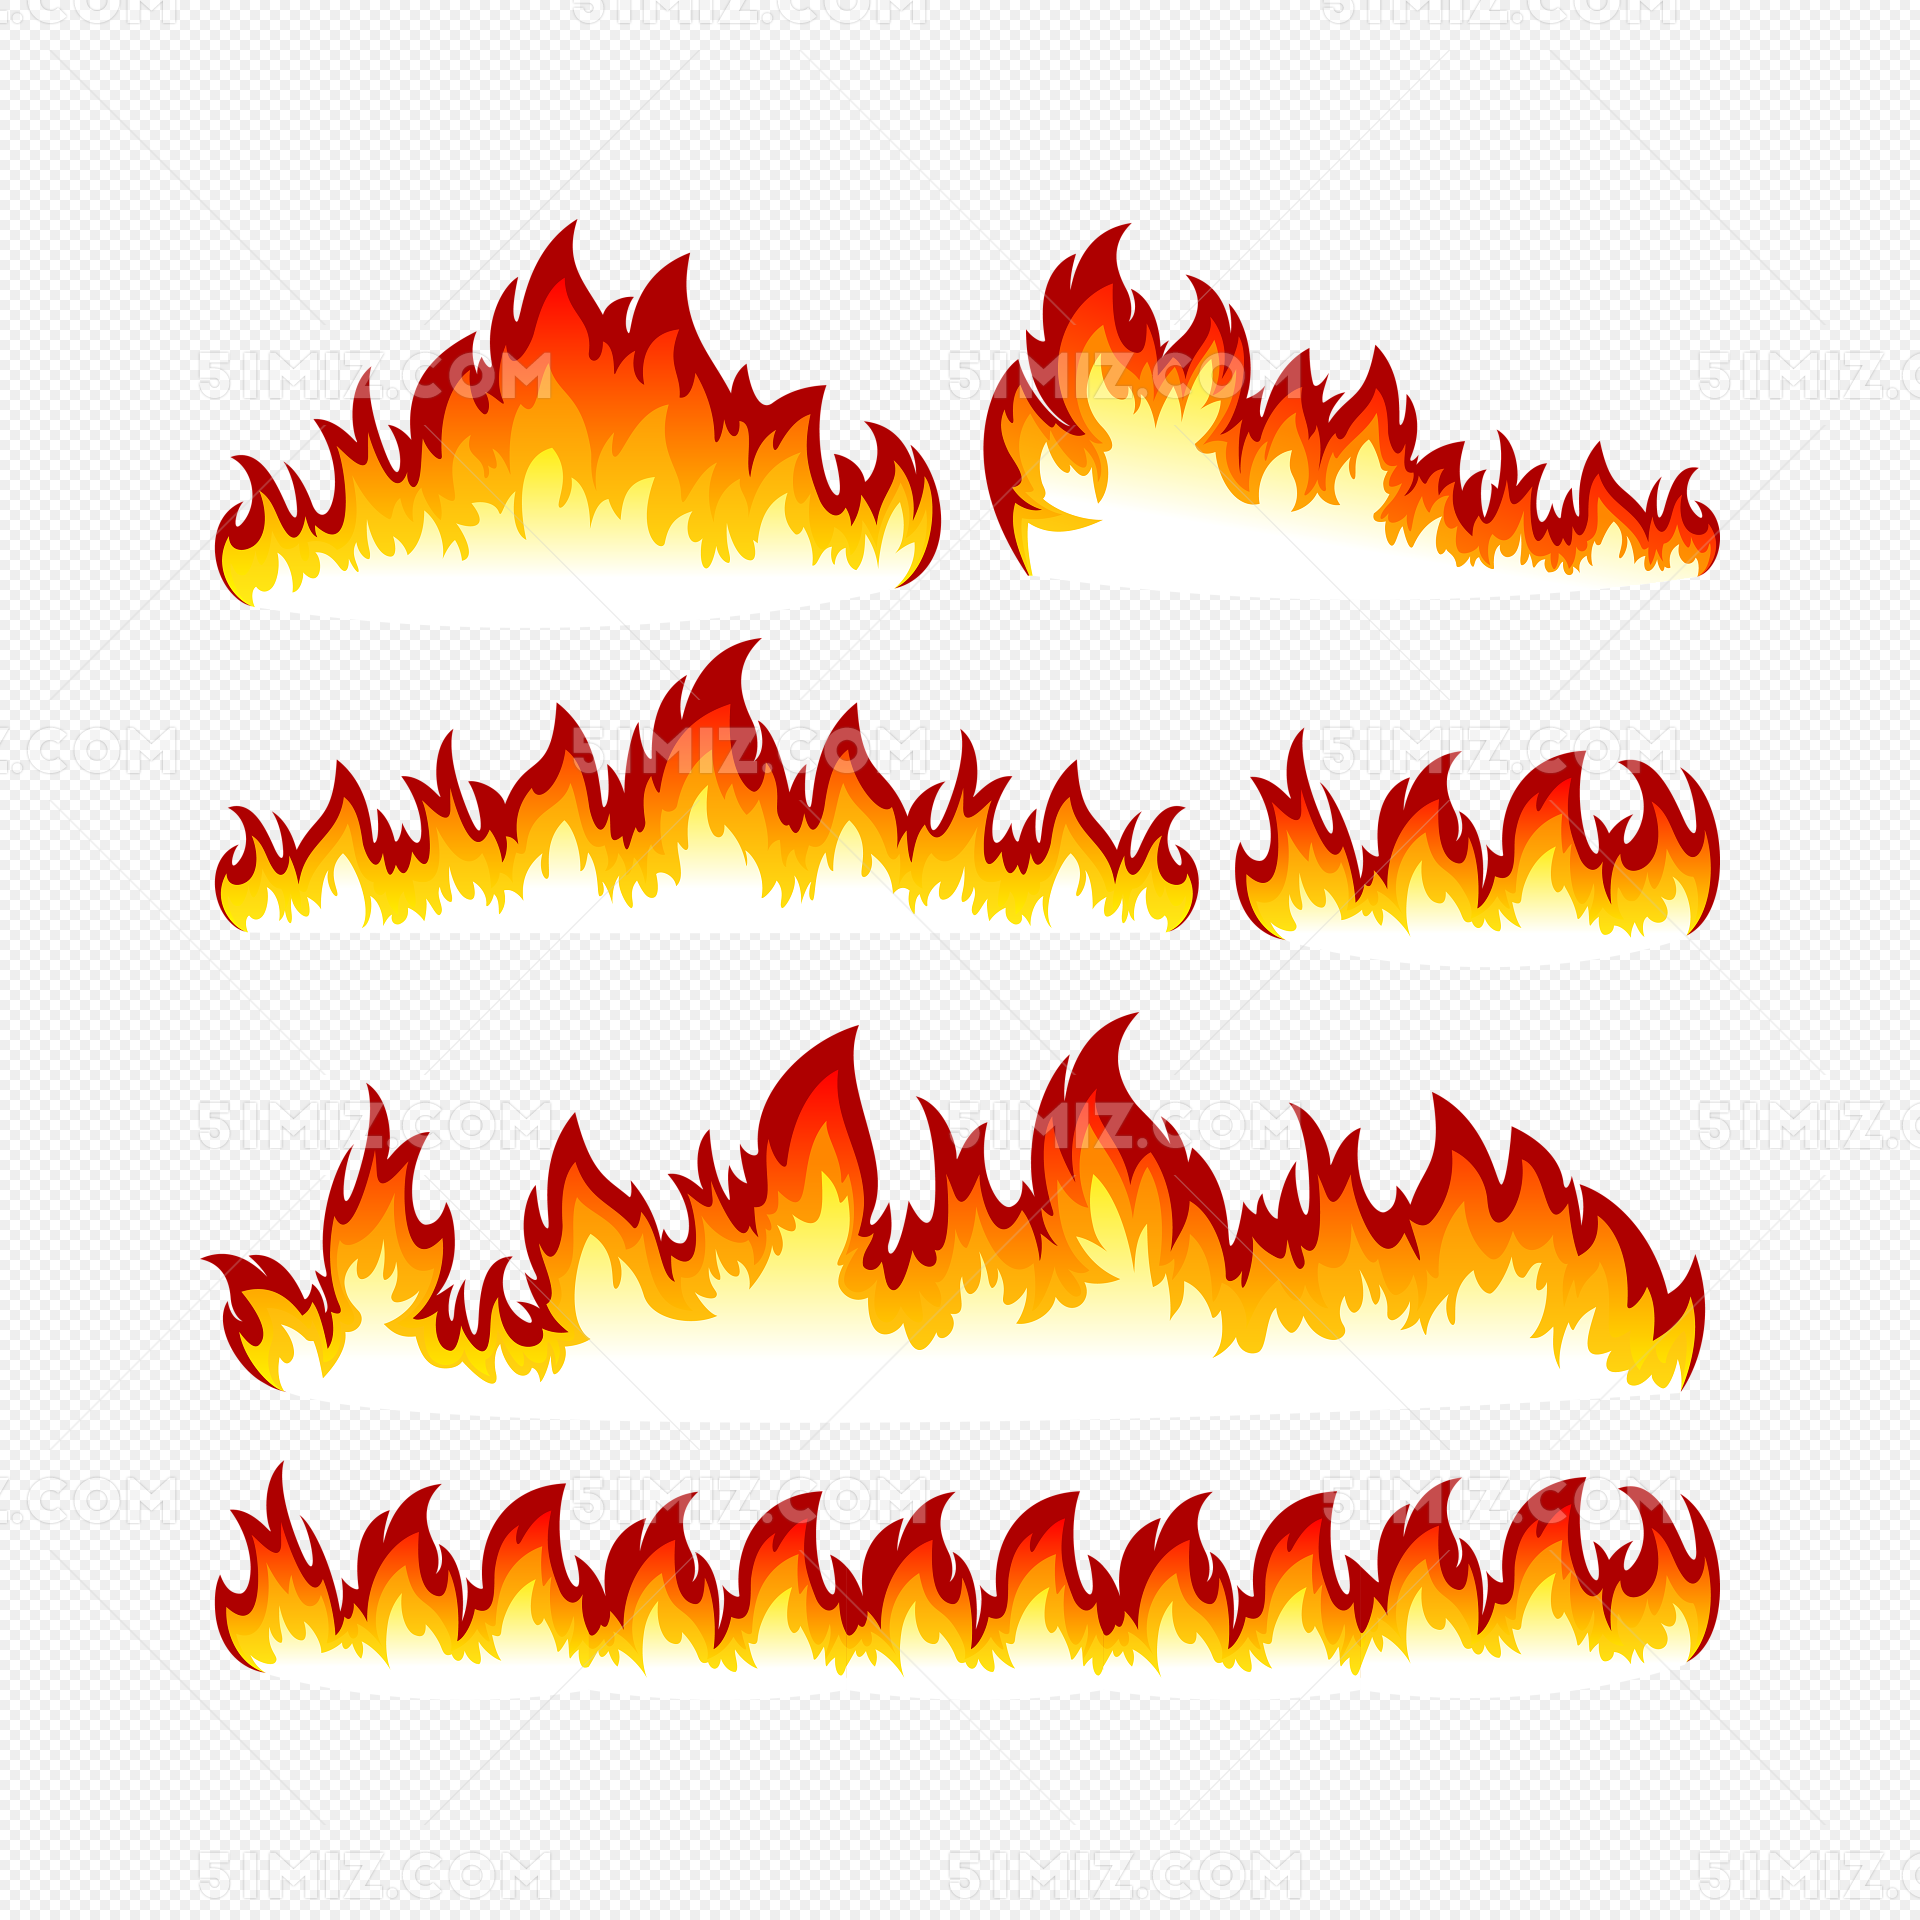 火在生活中的用途图片-图库-五毛网